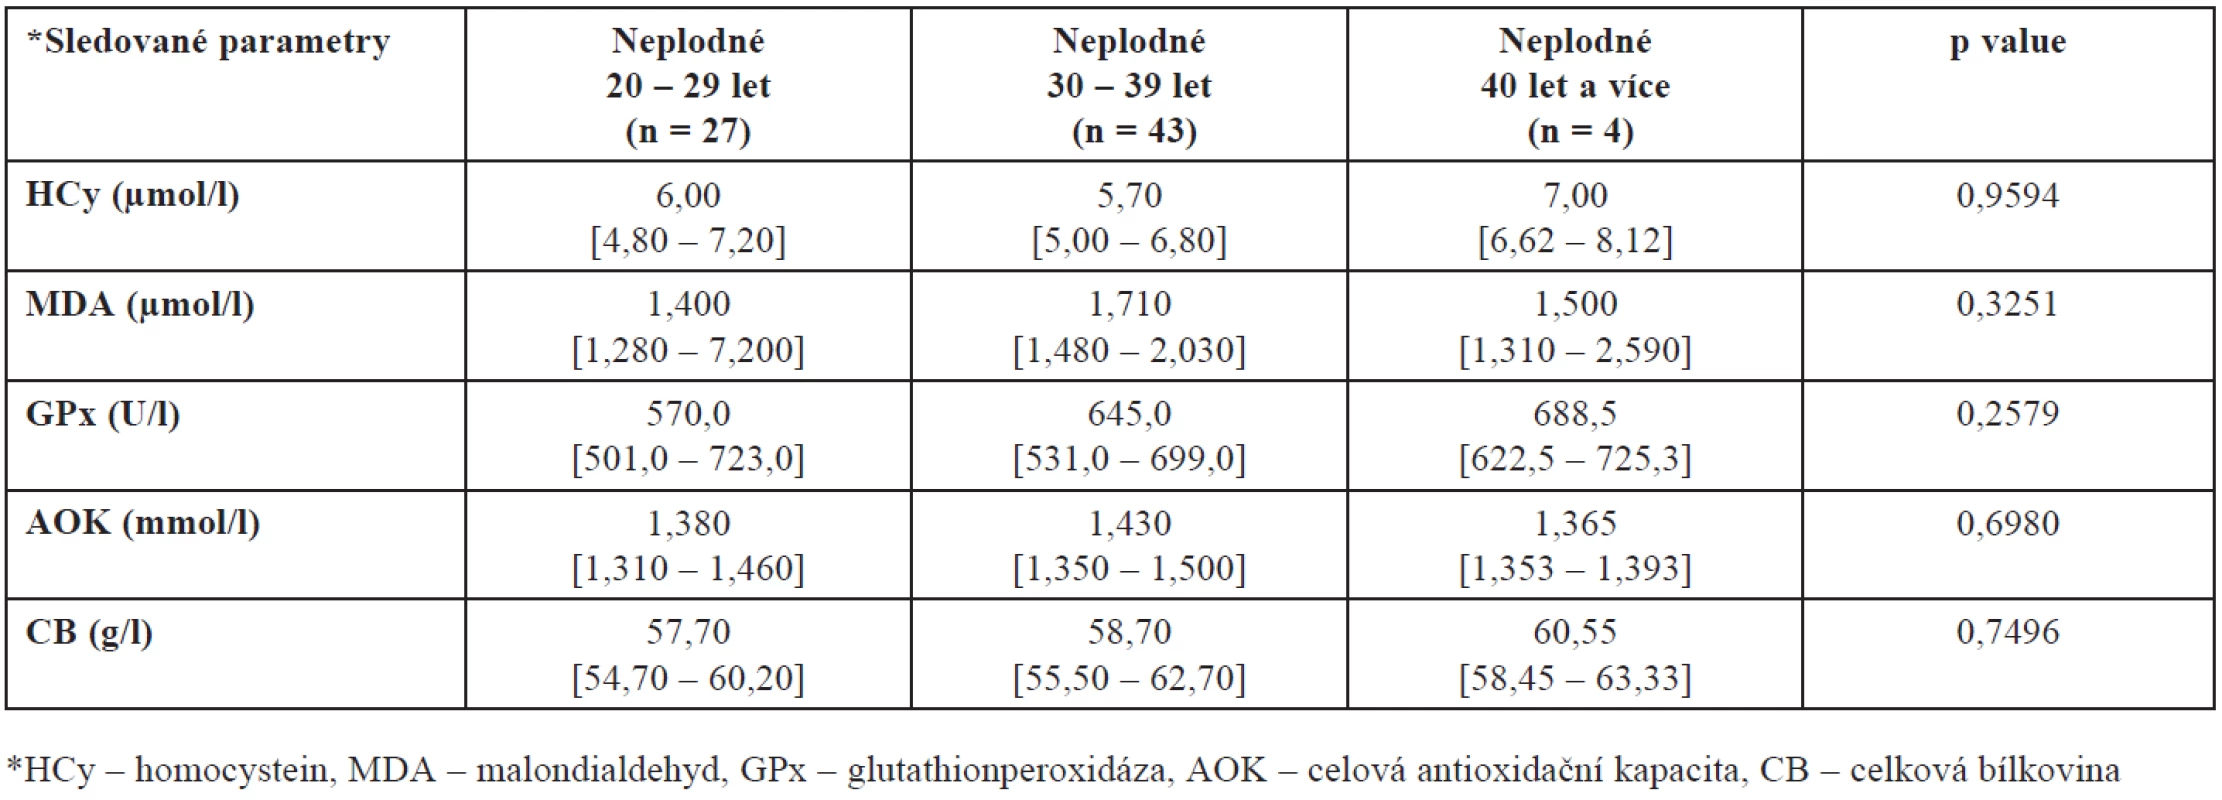 Hladiny HCy, MDA, GPx, AOK a CB ve folikulární tekutině neplodných žen v závislosti na věku
(hodnoty jsou uvedeny jako medián a interkvartilové rozpětí)